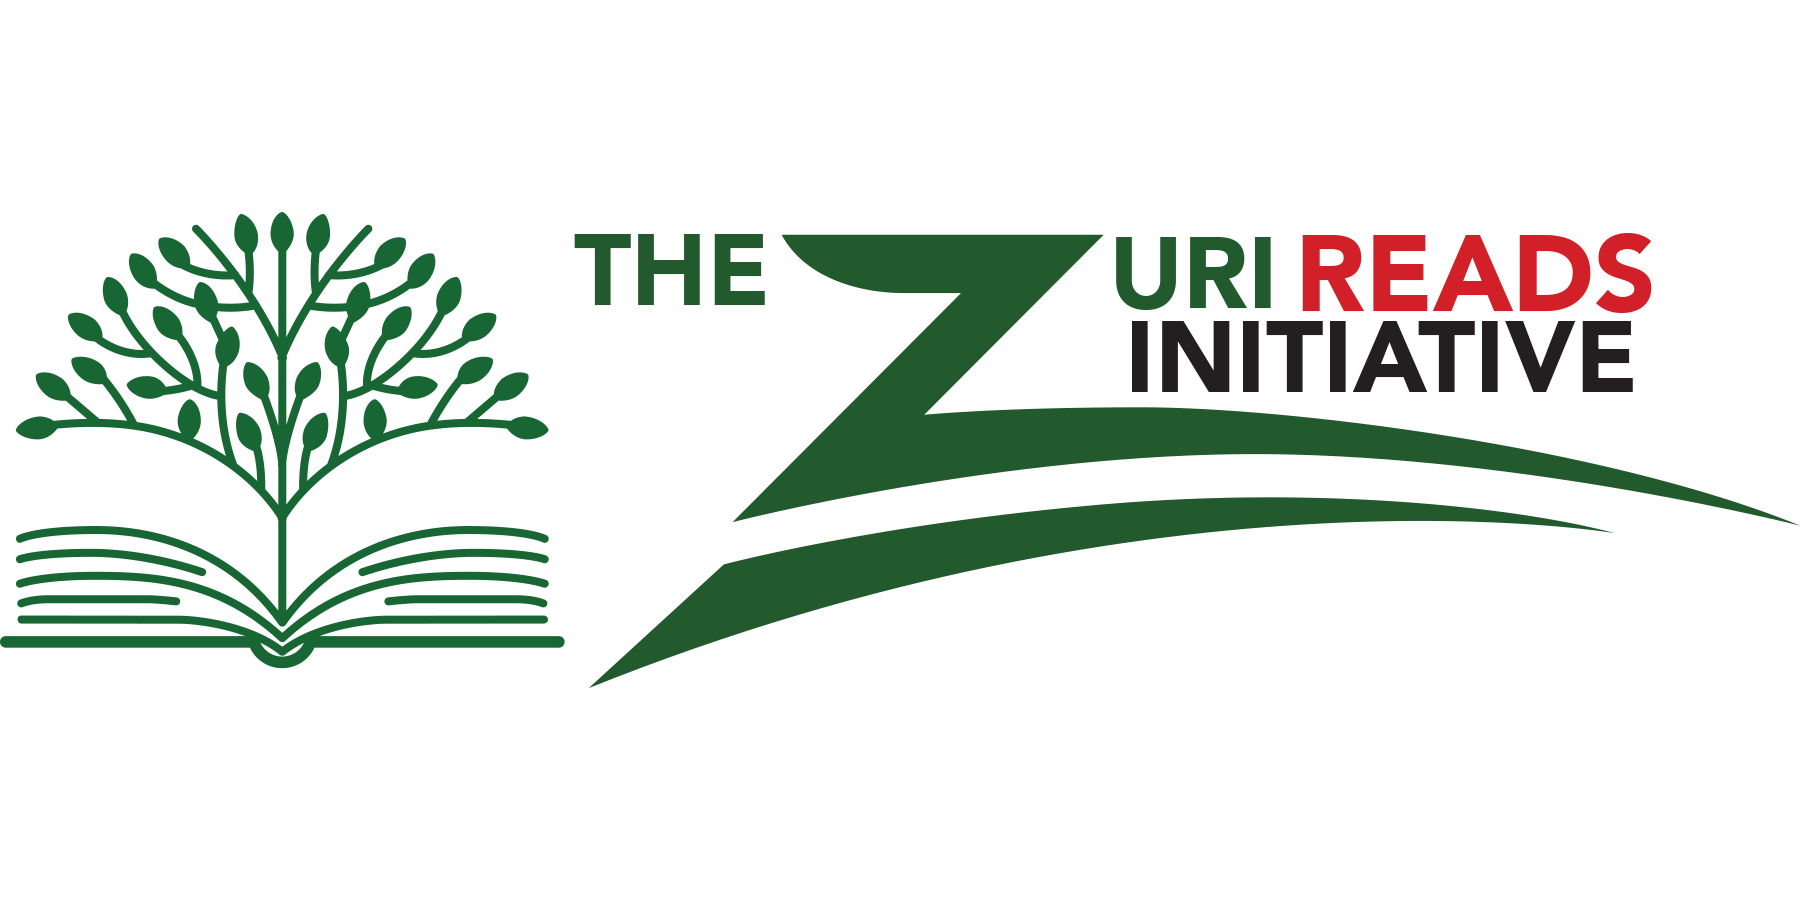 The Zuri Reads Initiative